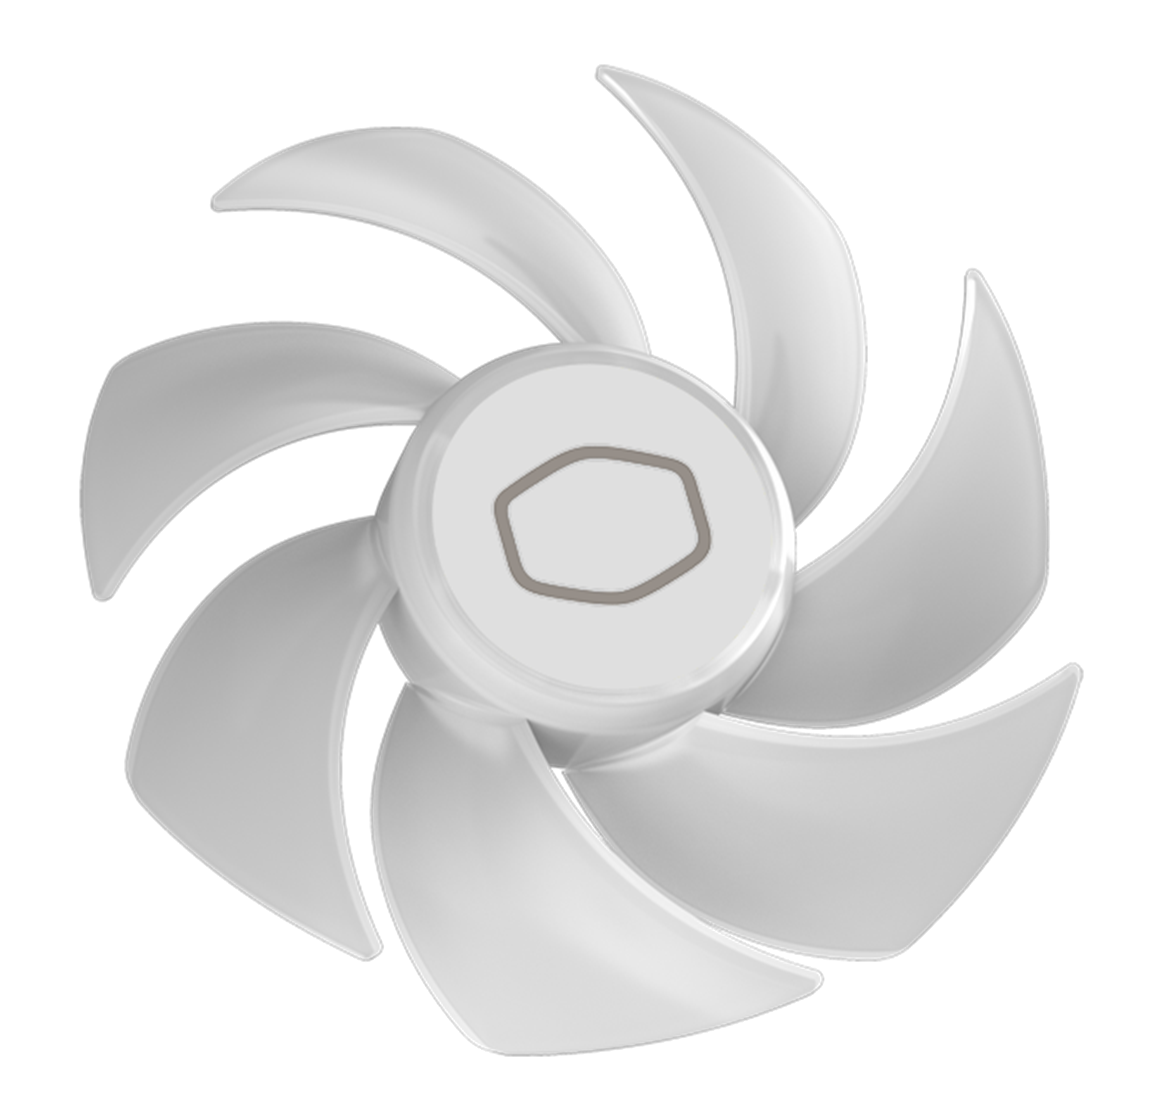 Enlarged Fan Blades